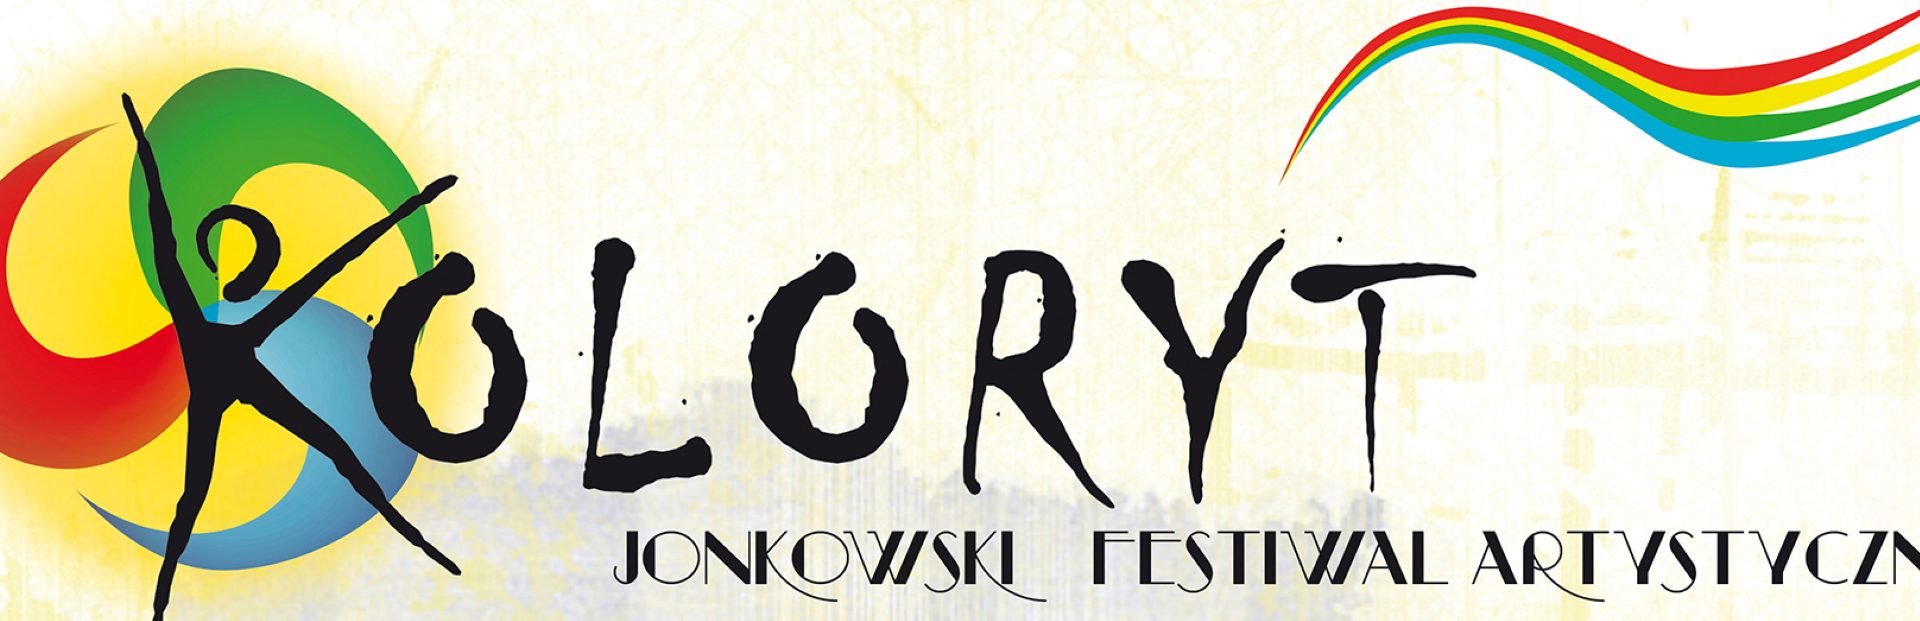 Plakat graficzny zapraszający do Jonkowa na coroczną imprezę plenerową Festiwal Koloryt Jonkowo 2023.